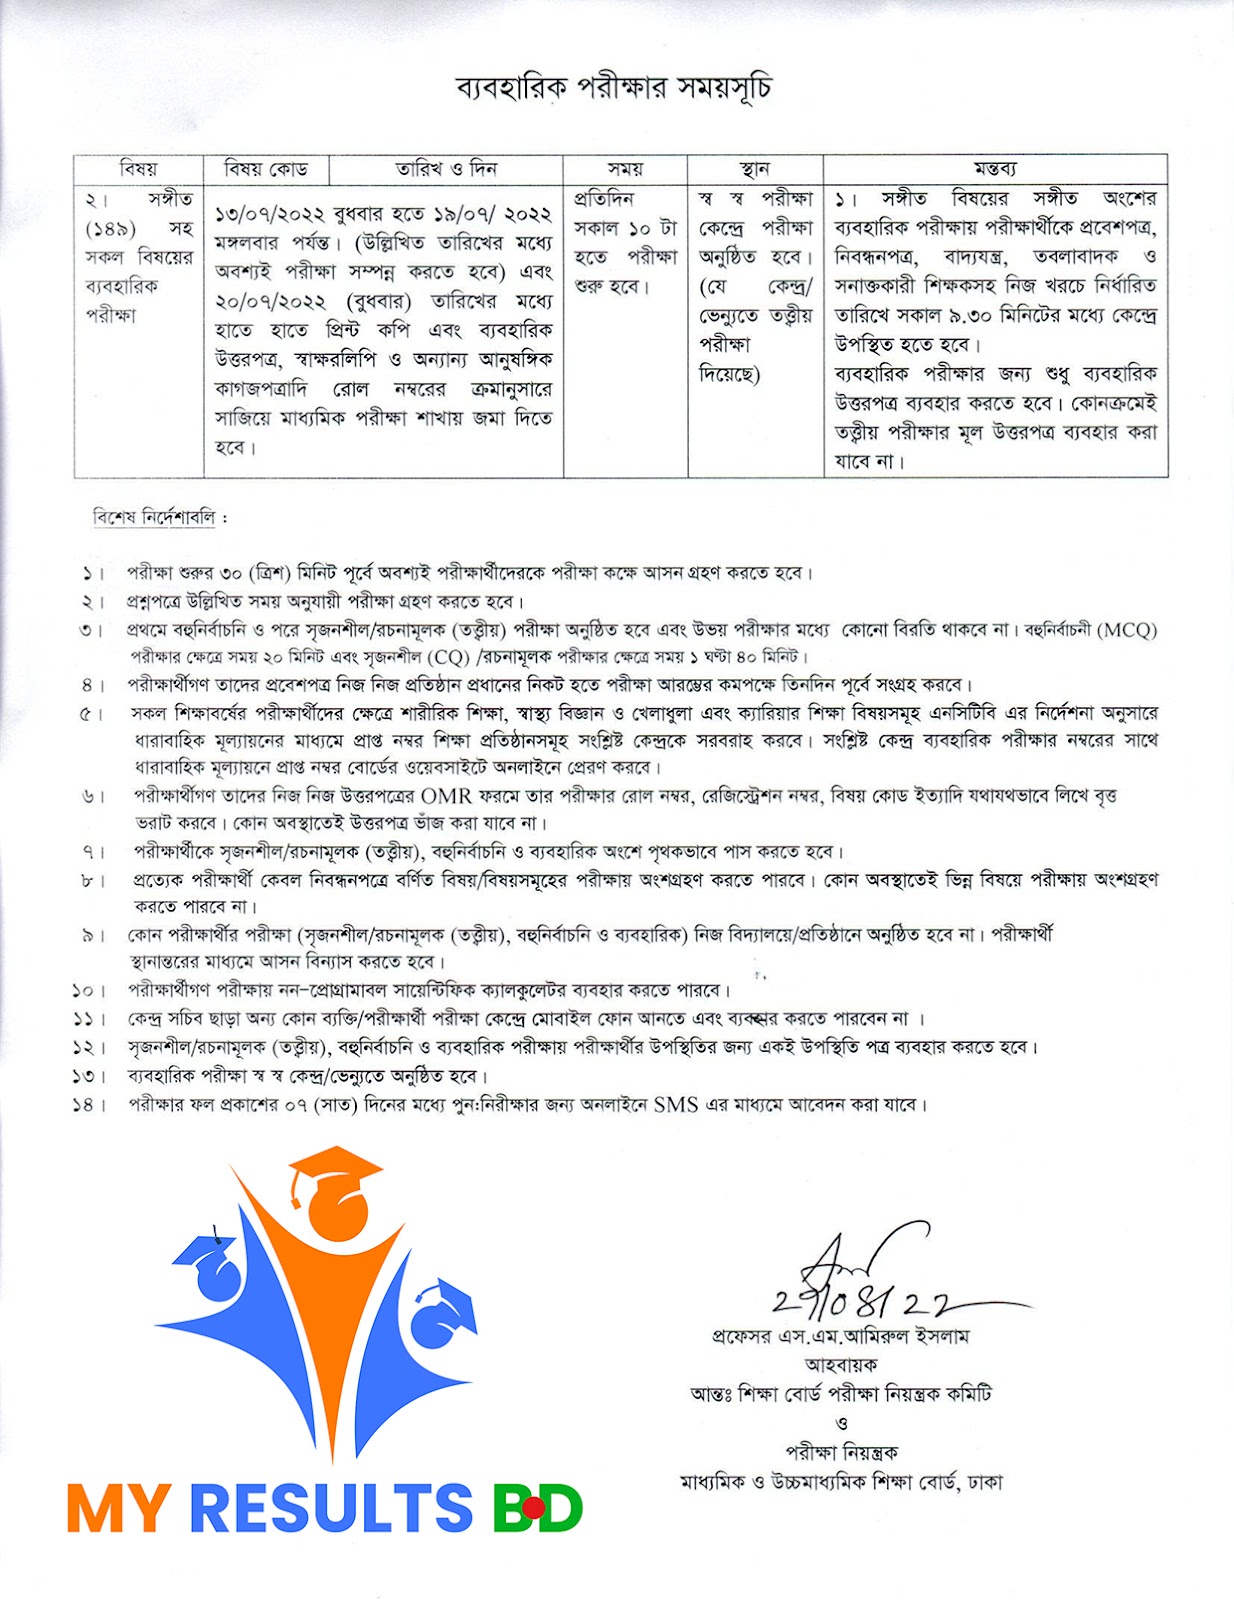 SSC Routine 2022 Rajshahi Board